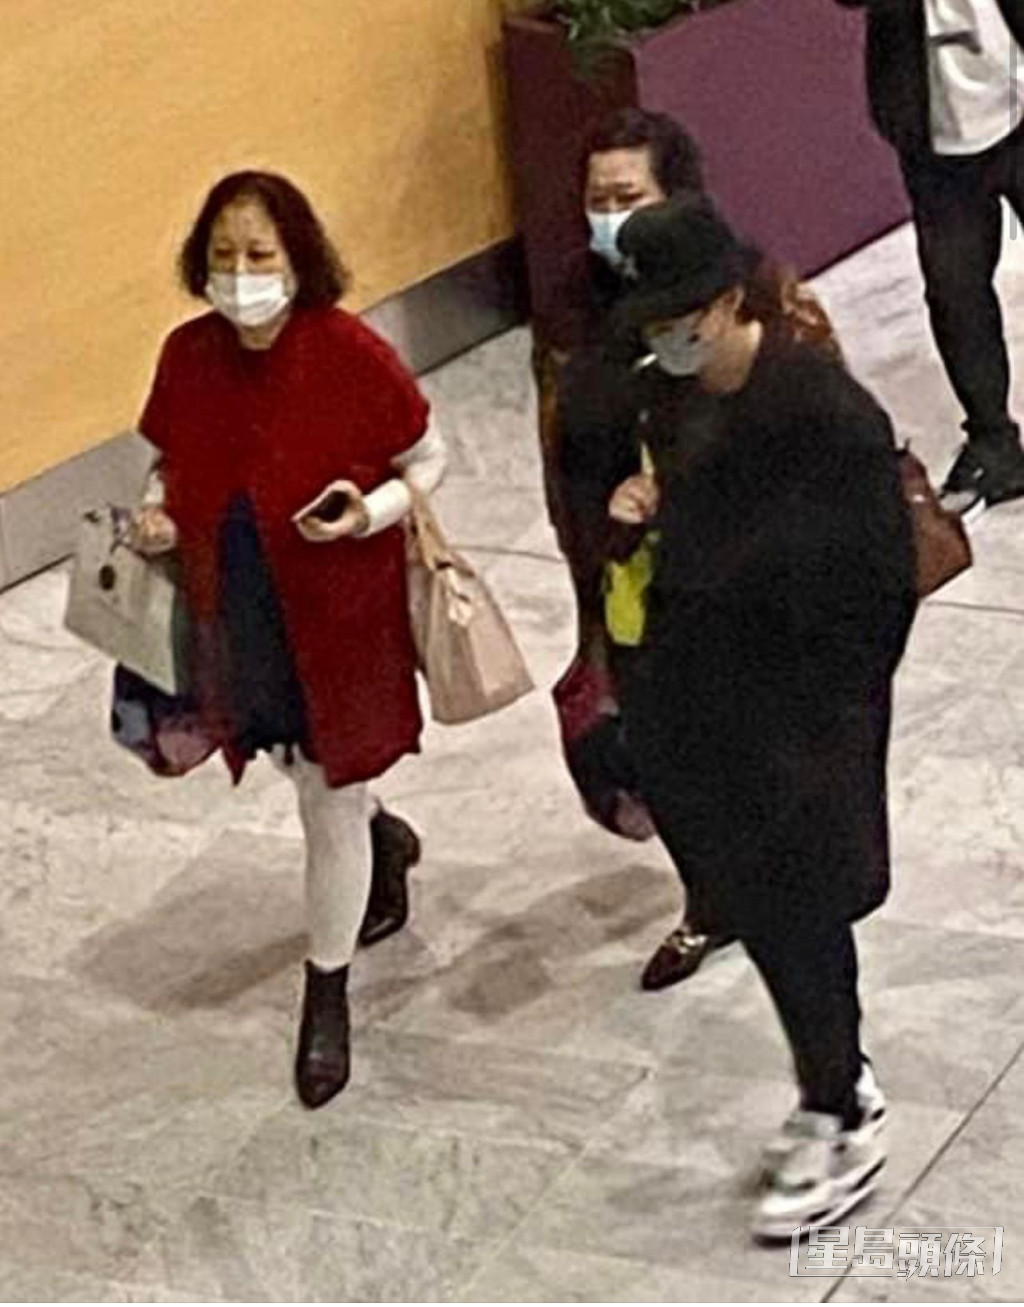 粉丝在法国机场捕获姜涛与妈咪、姨妈。